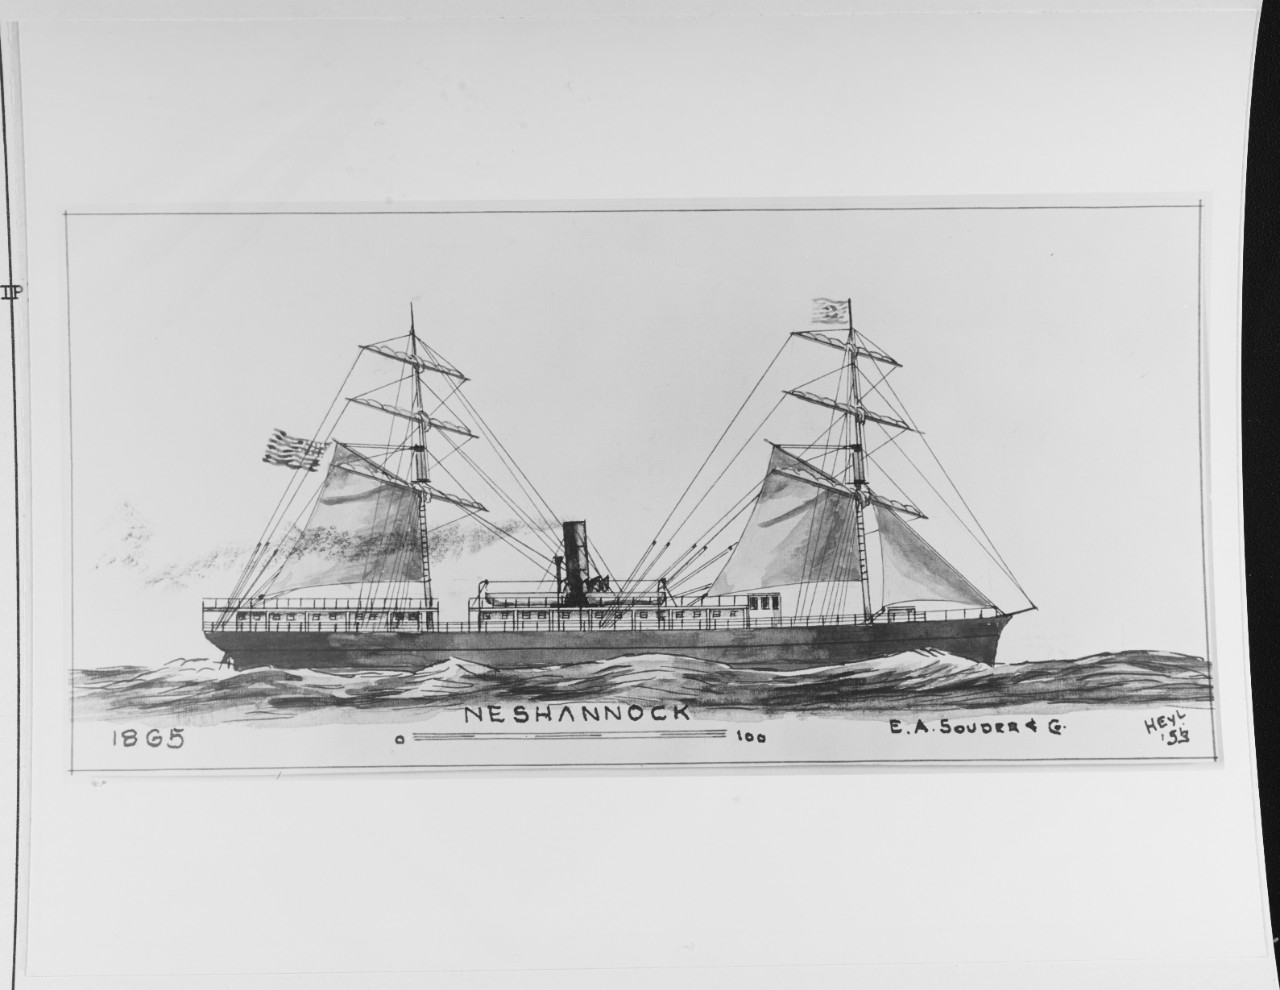 NESHANNOCK (American merchant steamer, 1865-1871)